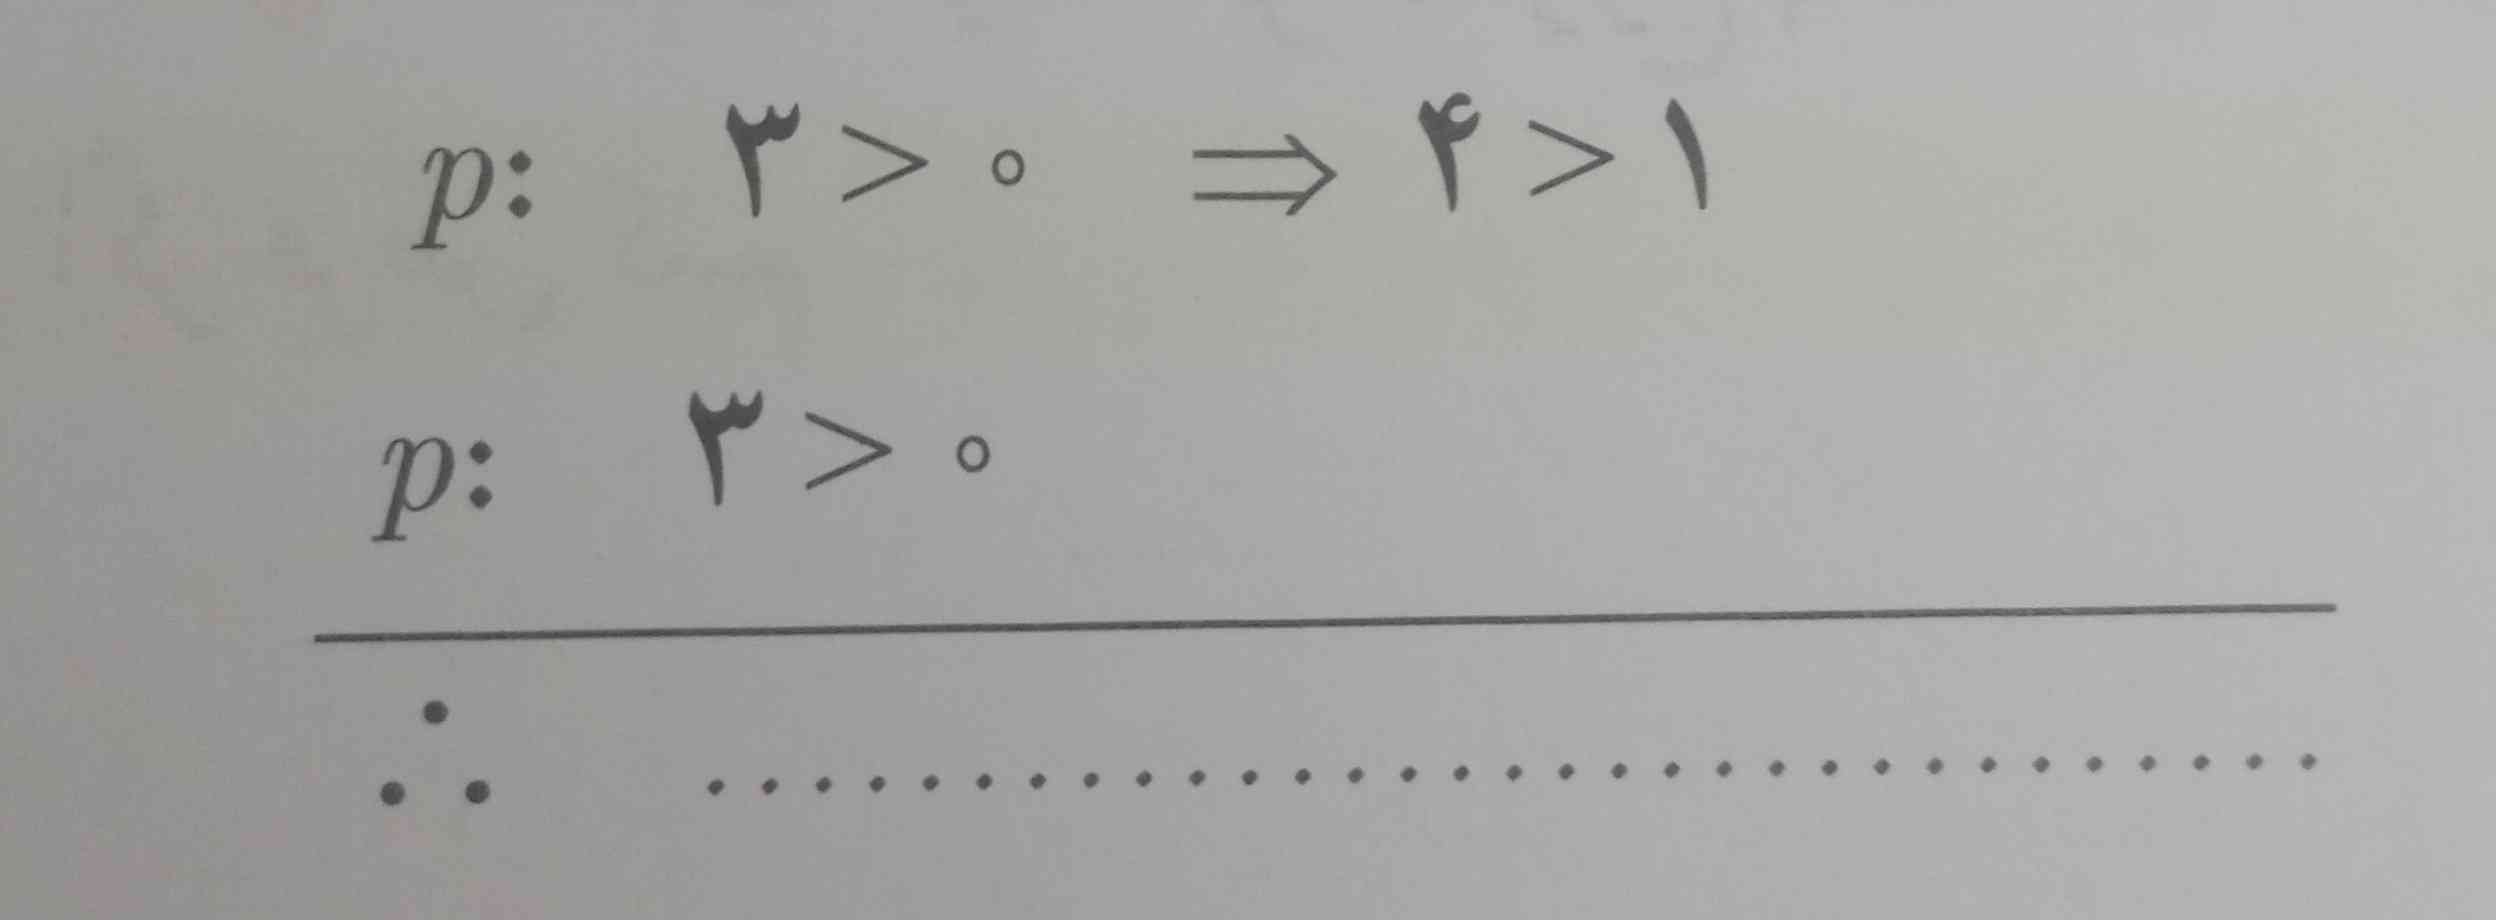 عبارت زیررابه صورت نمادی بنویسید
عددی به علاوه پنج مساوی دوبرابران عدداست؟  